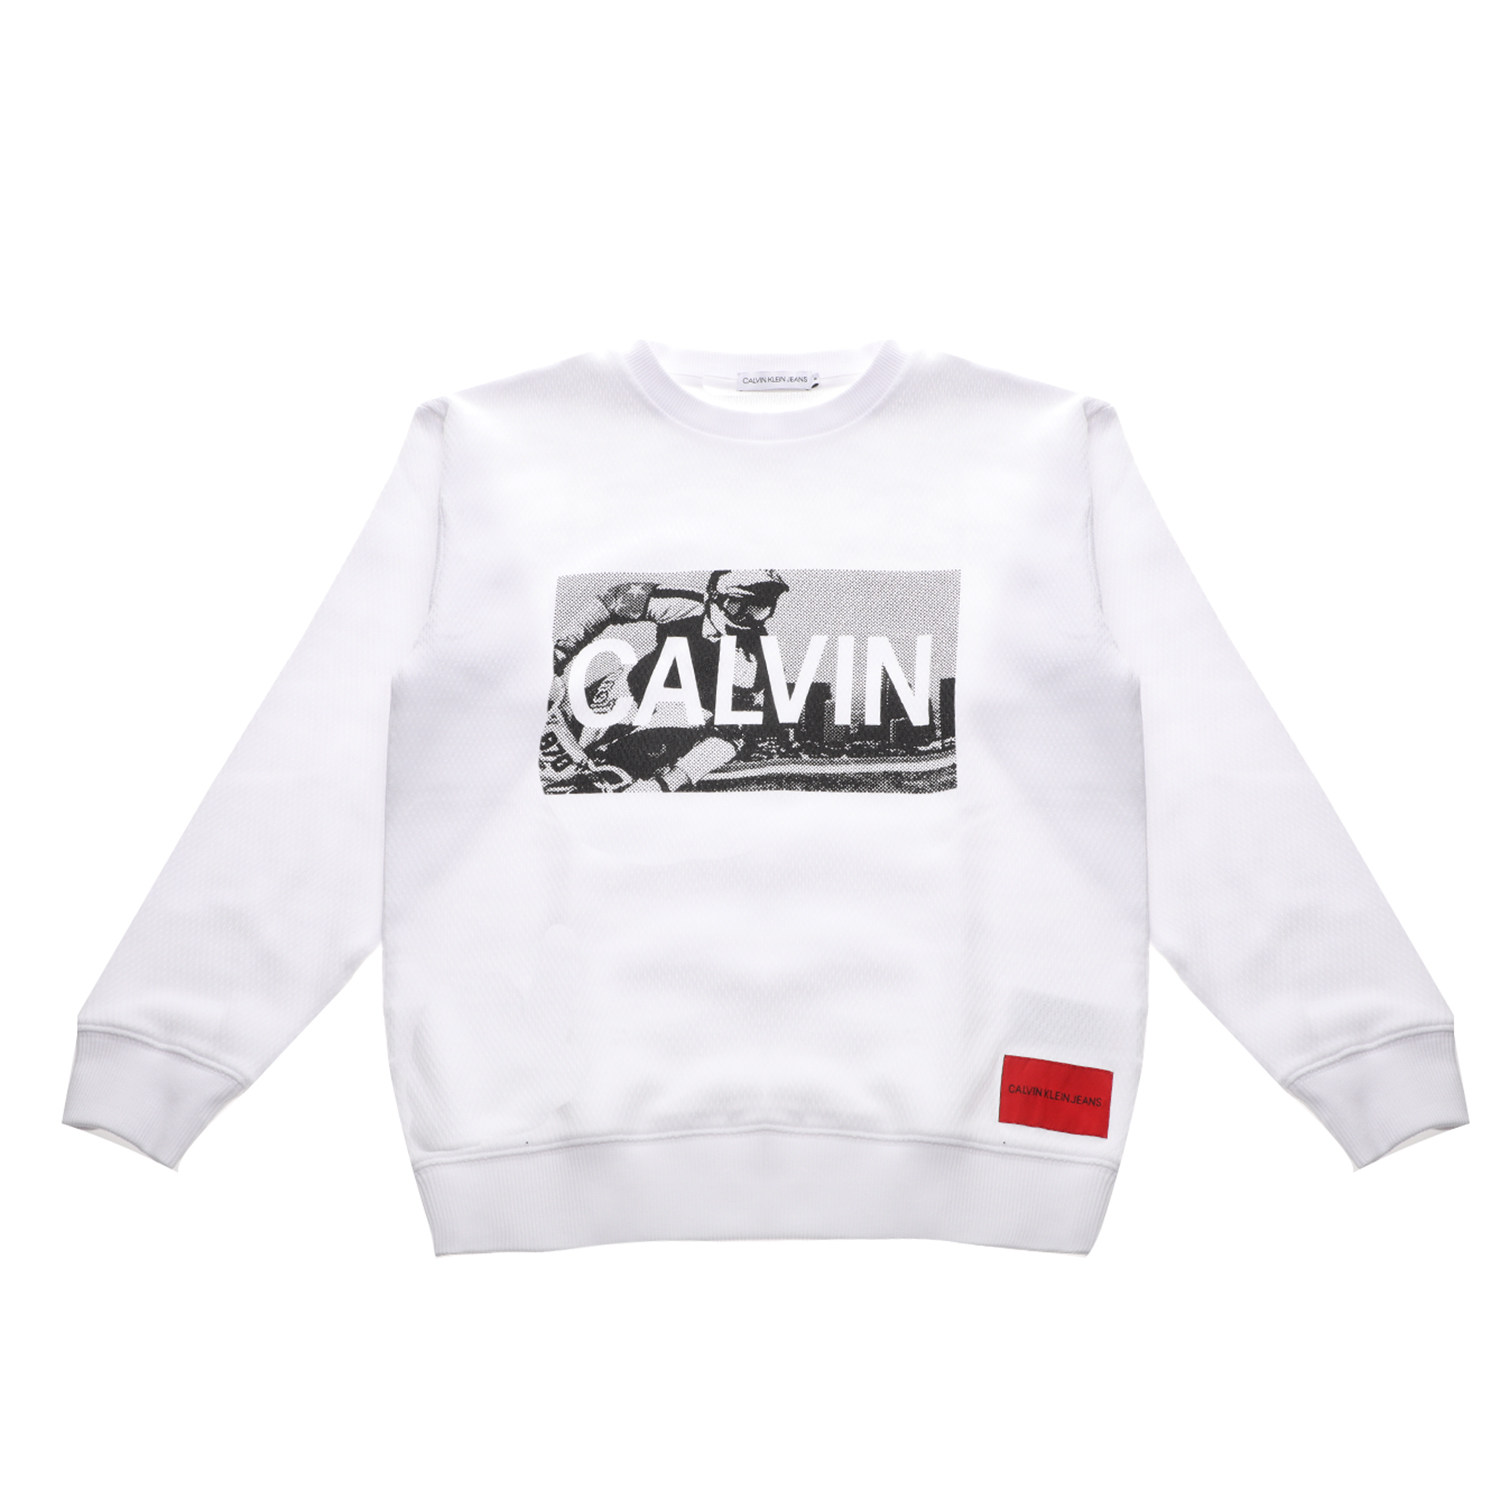 CALVIN KLEIN JEANS KIDS - Παιδική φούτερ μπλούζα CALVIN KLEIN JEANS KIDS λευκή Παιδικά/Boys/Ρούχα/Φούτερ